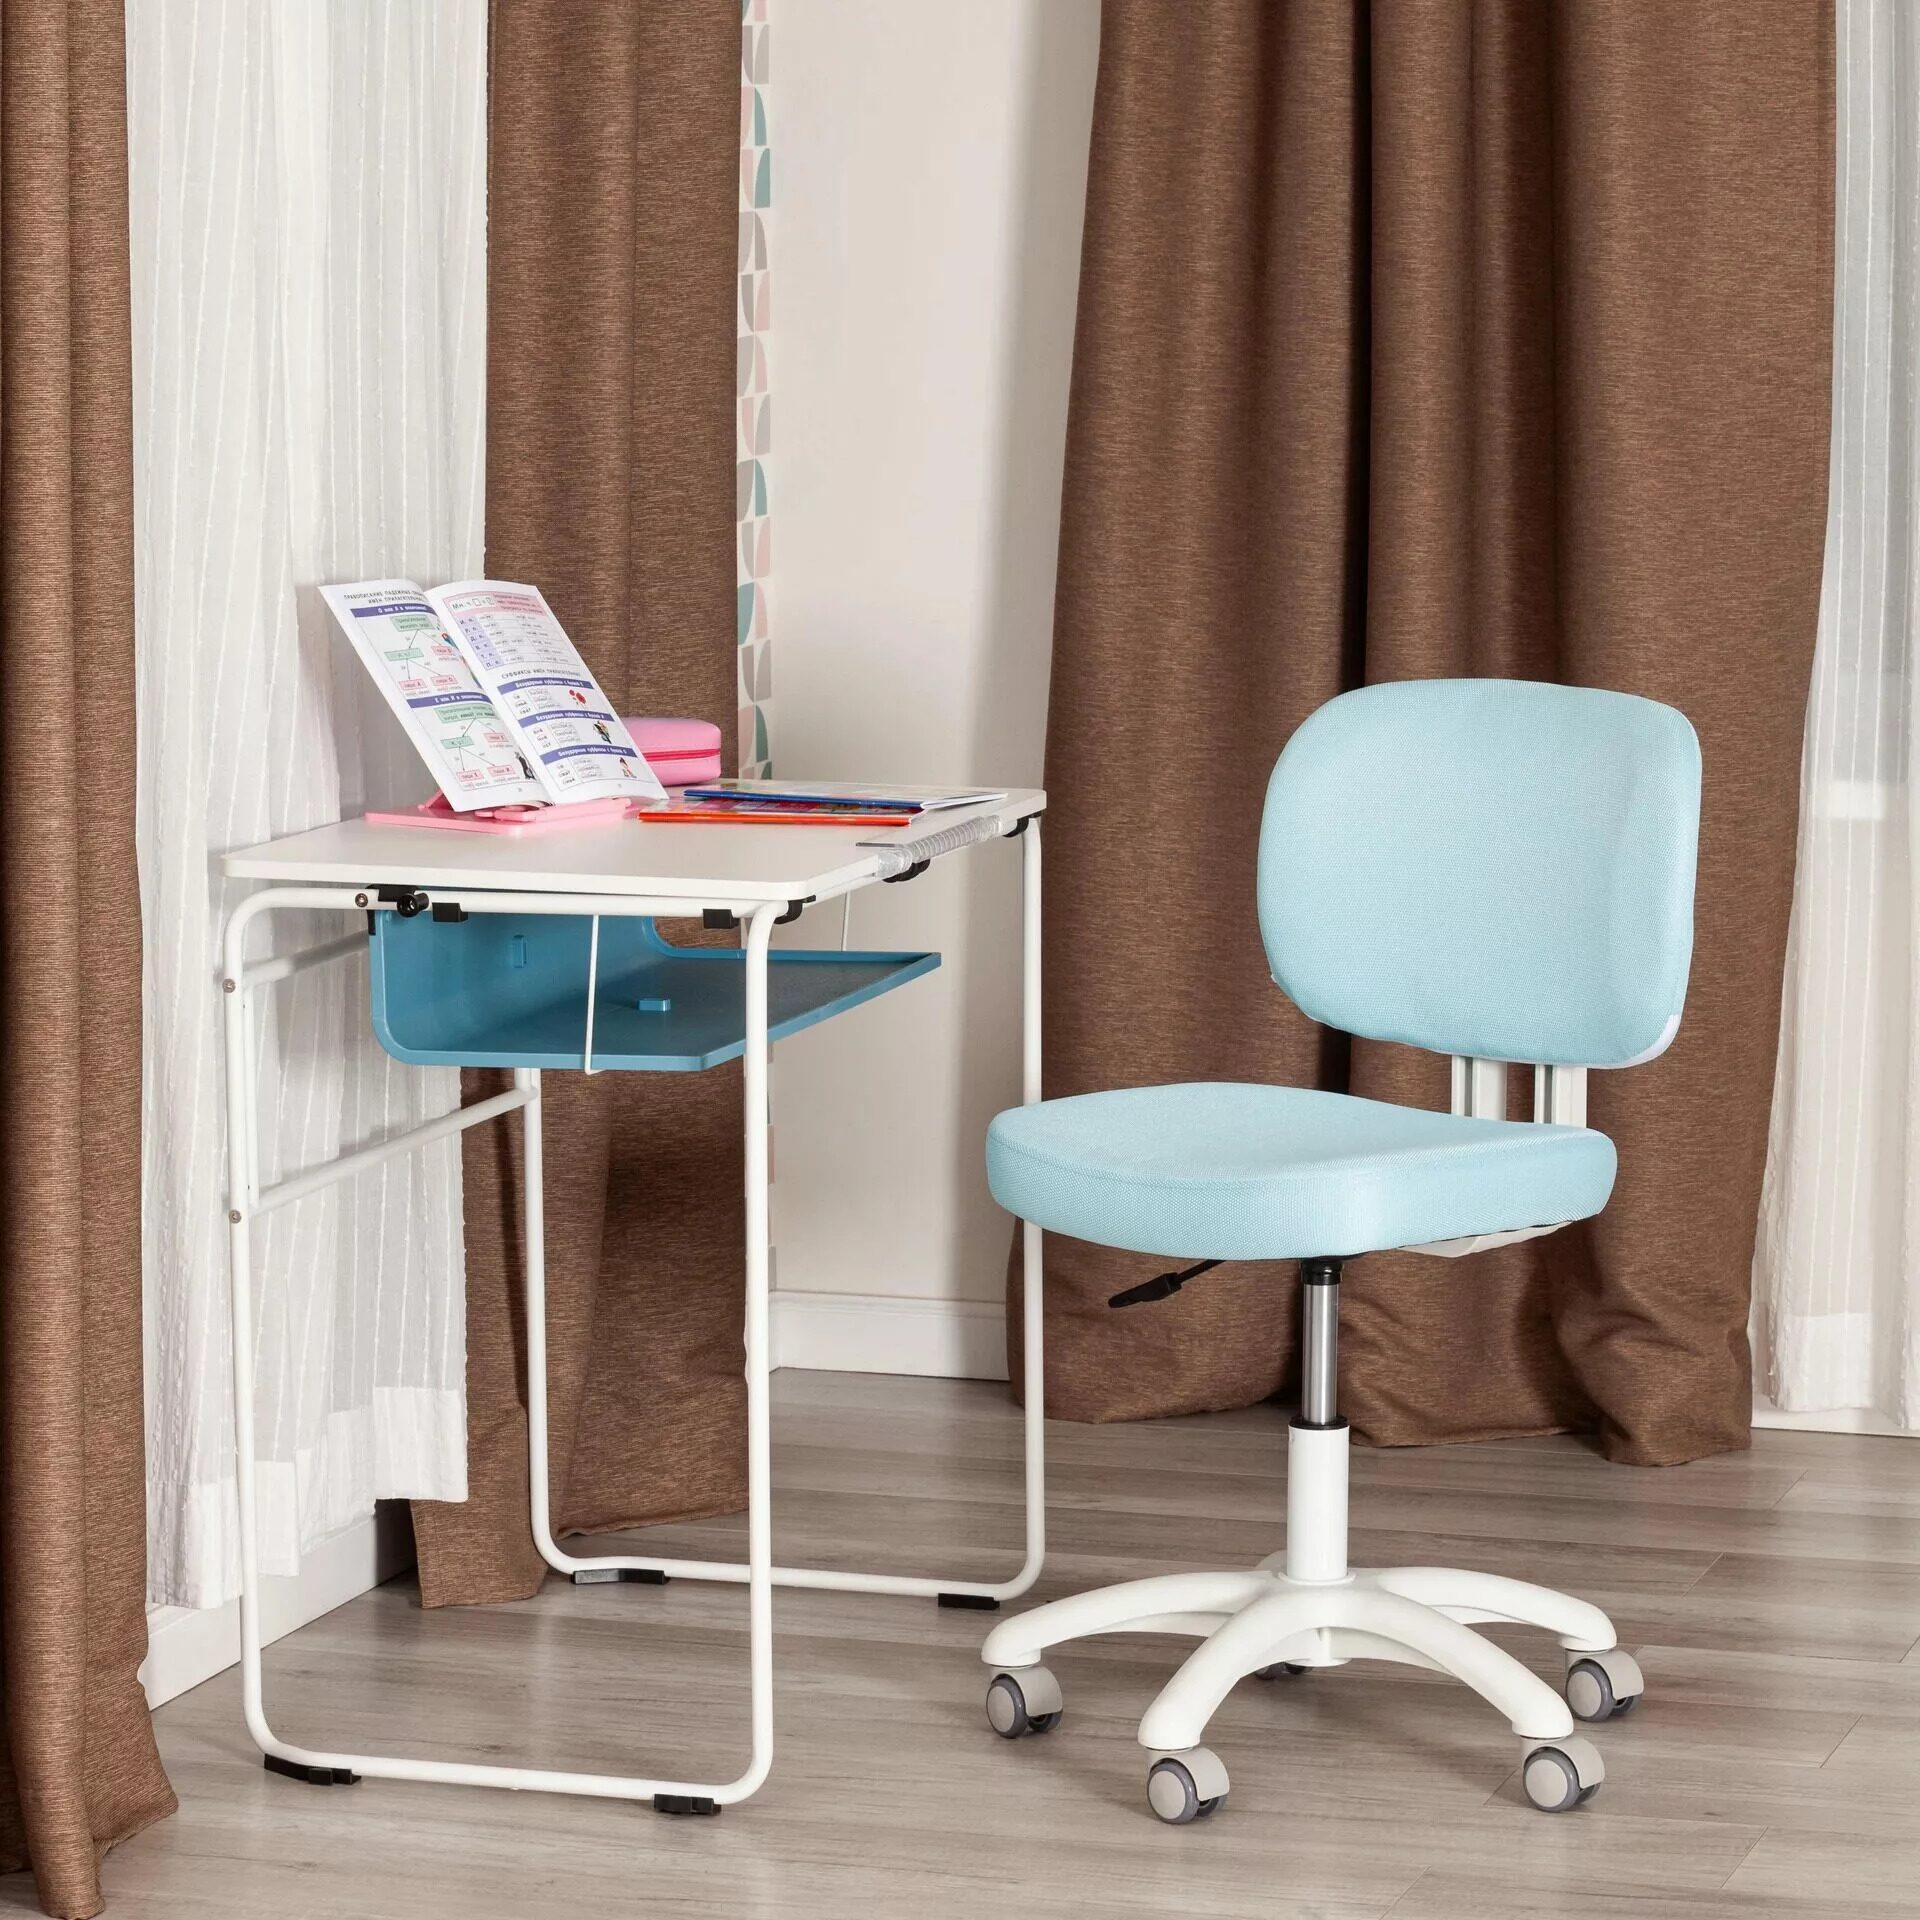 Кресло Junior Blue, голубой купить недорого в СПб интернет-магазин  Дикси-Мебель